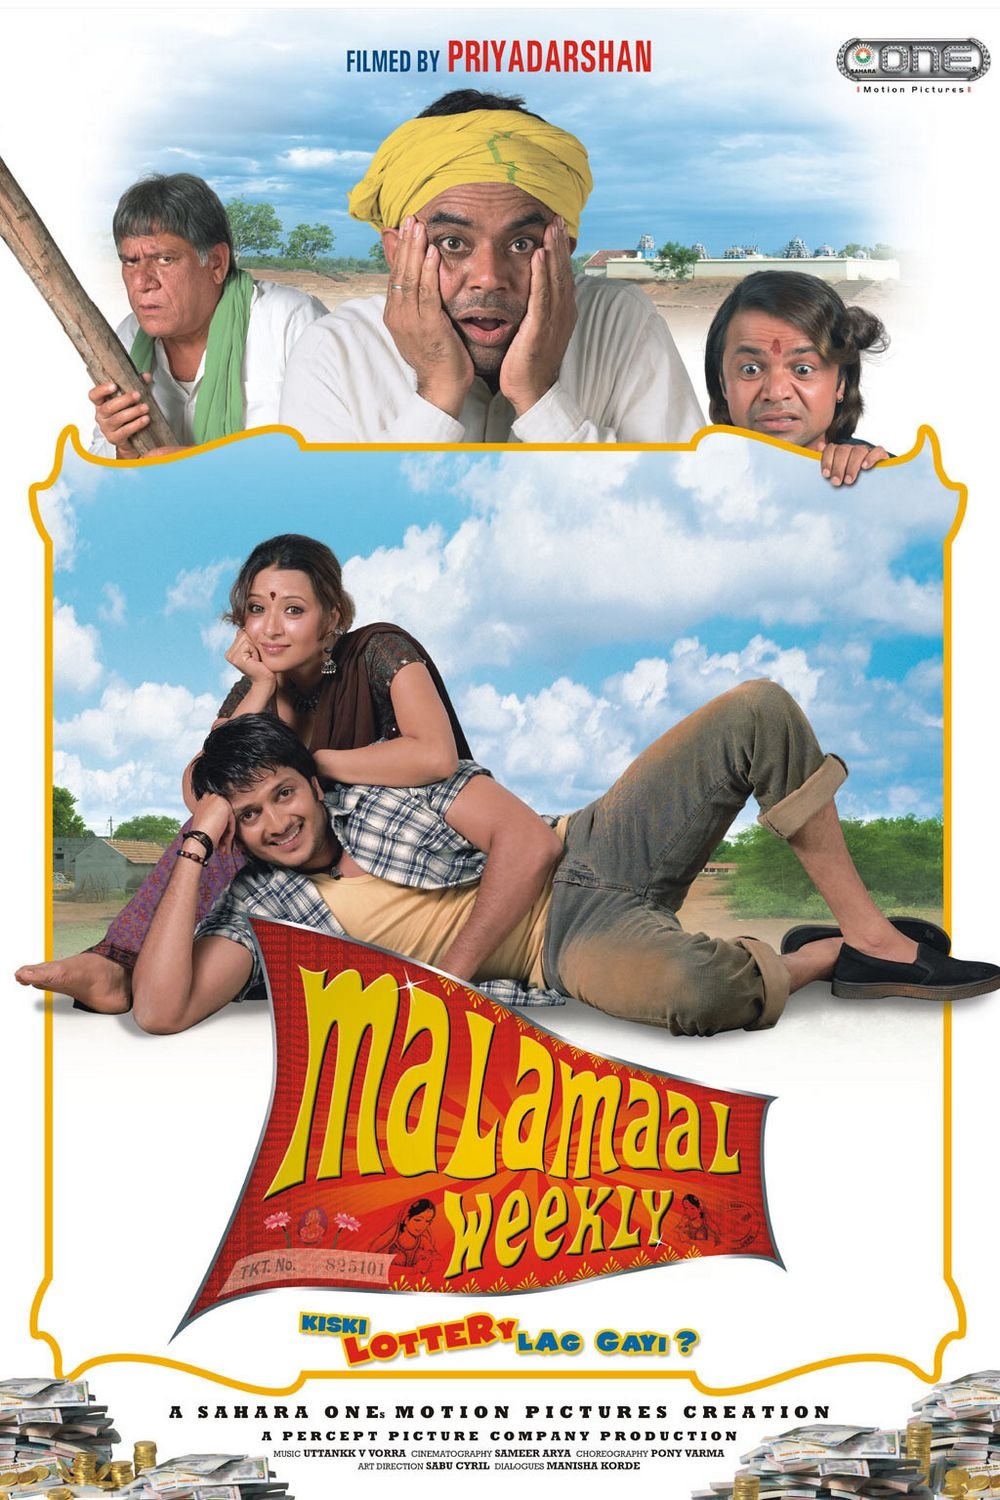 Hindi poster of the movie Malamaal Weekly